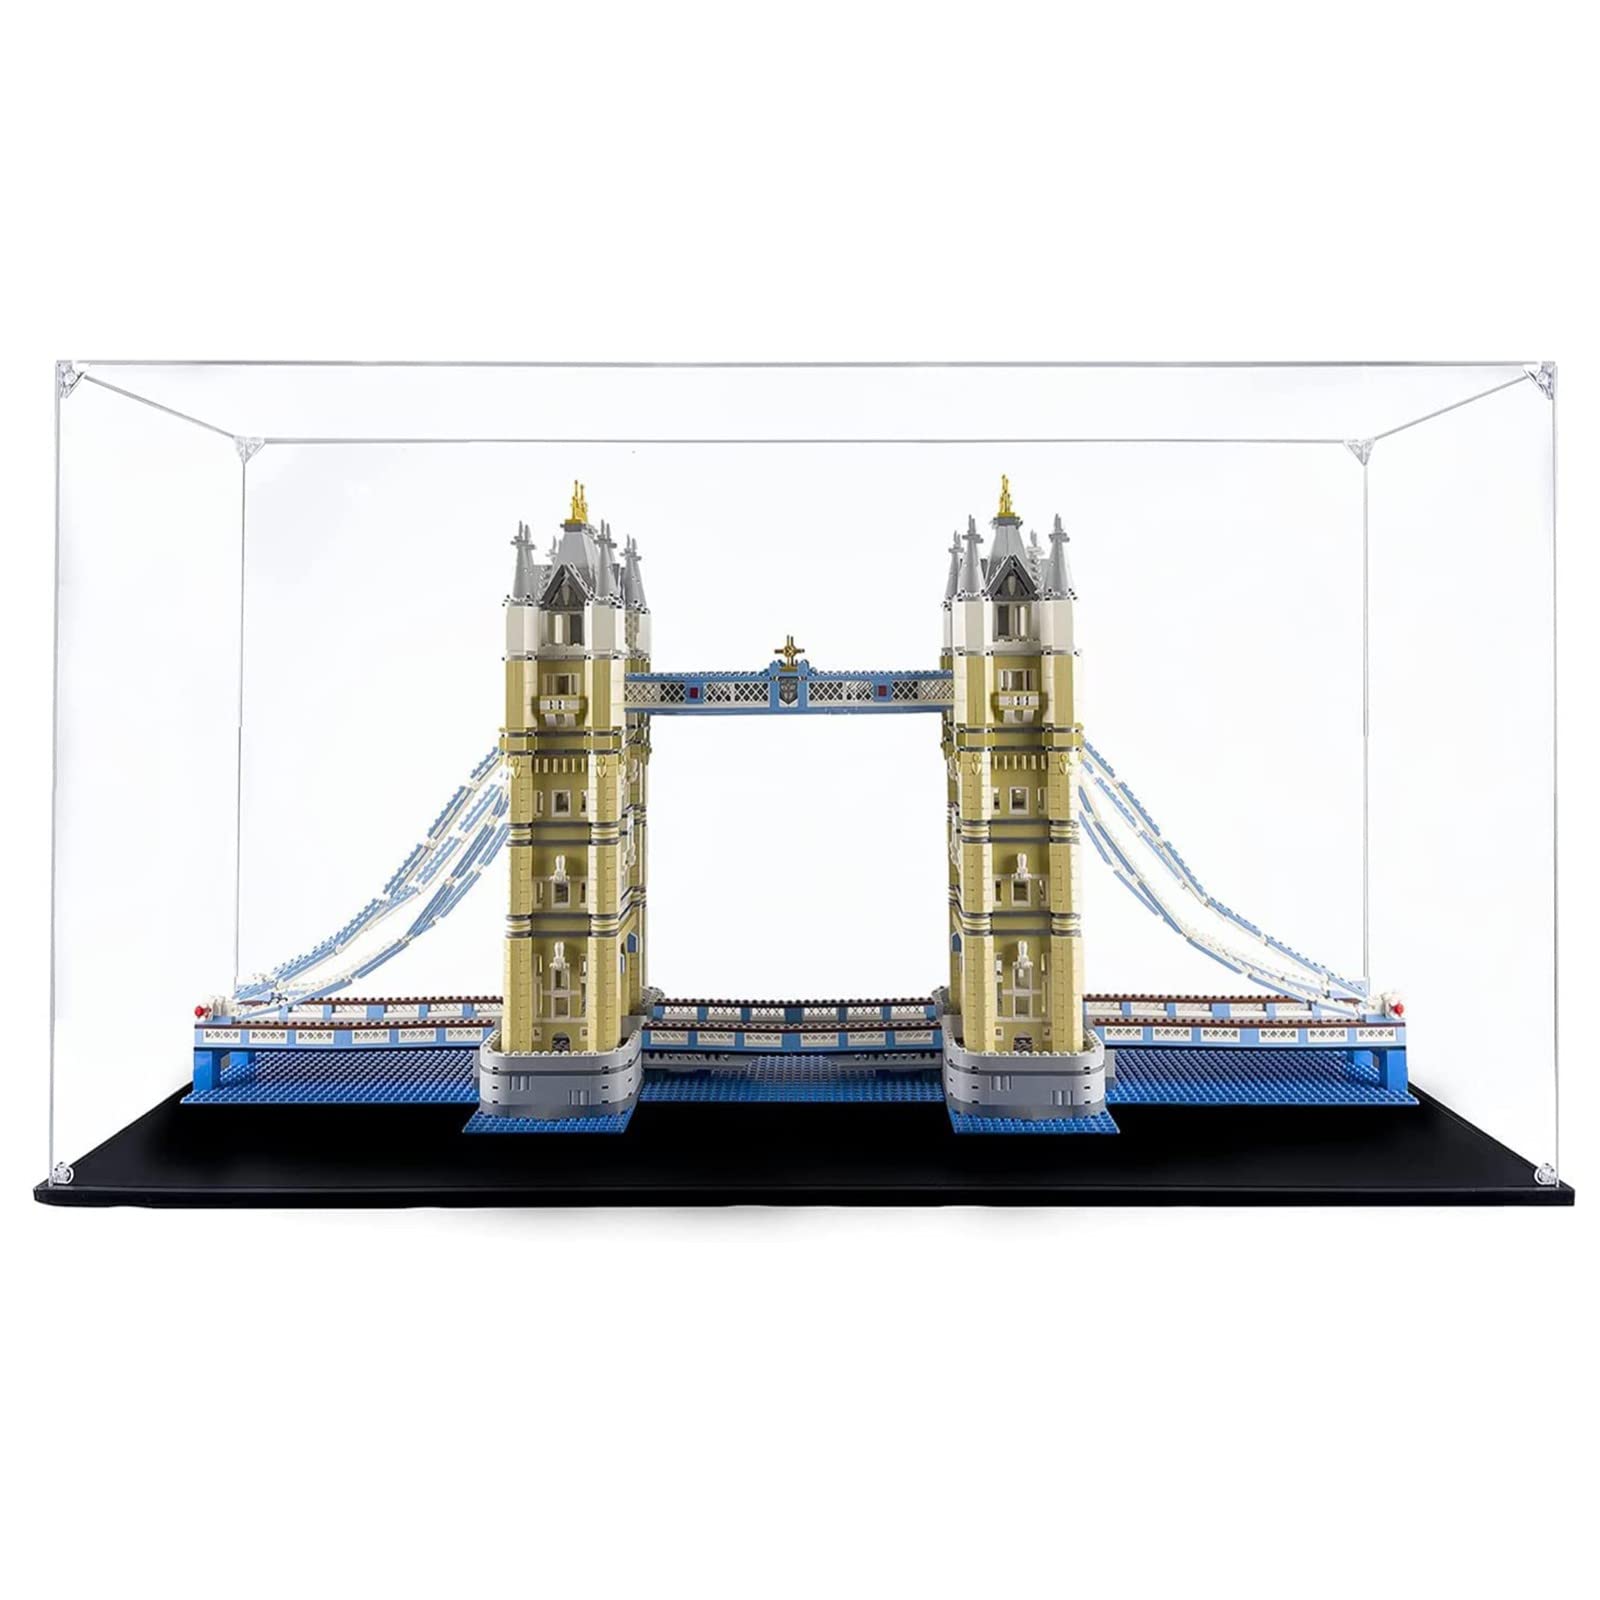 Acryl Vitrine Box Für Lego 10214 Tower Bridge, Acryl Vitrine, staubdichte Aufbewahrungsbox Präsentationsbox für Minifiguren Spielzeug Sammlung (107 * 30 * 50cm) 2mm